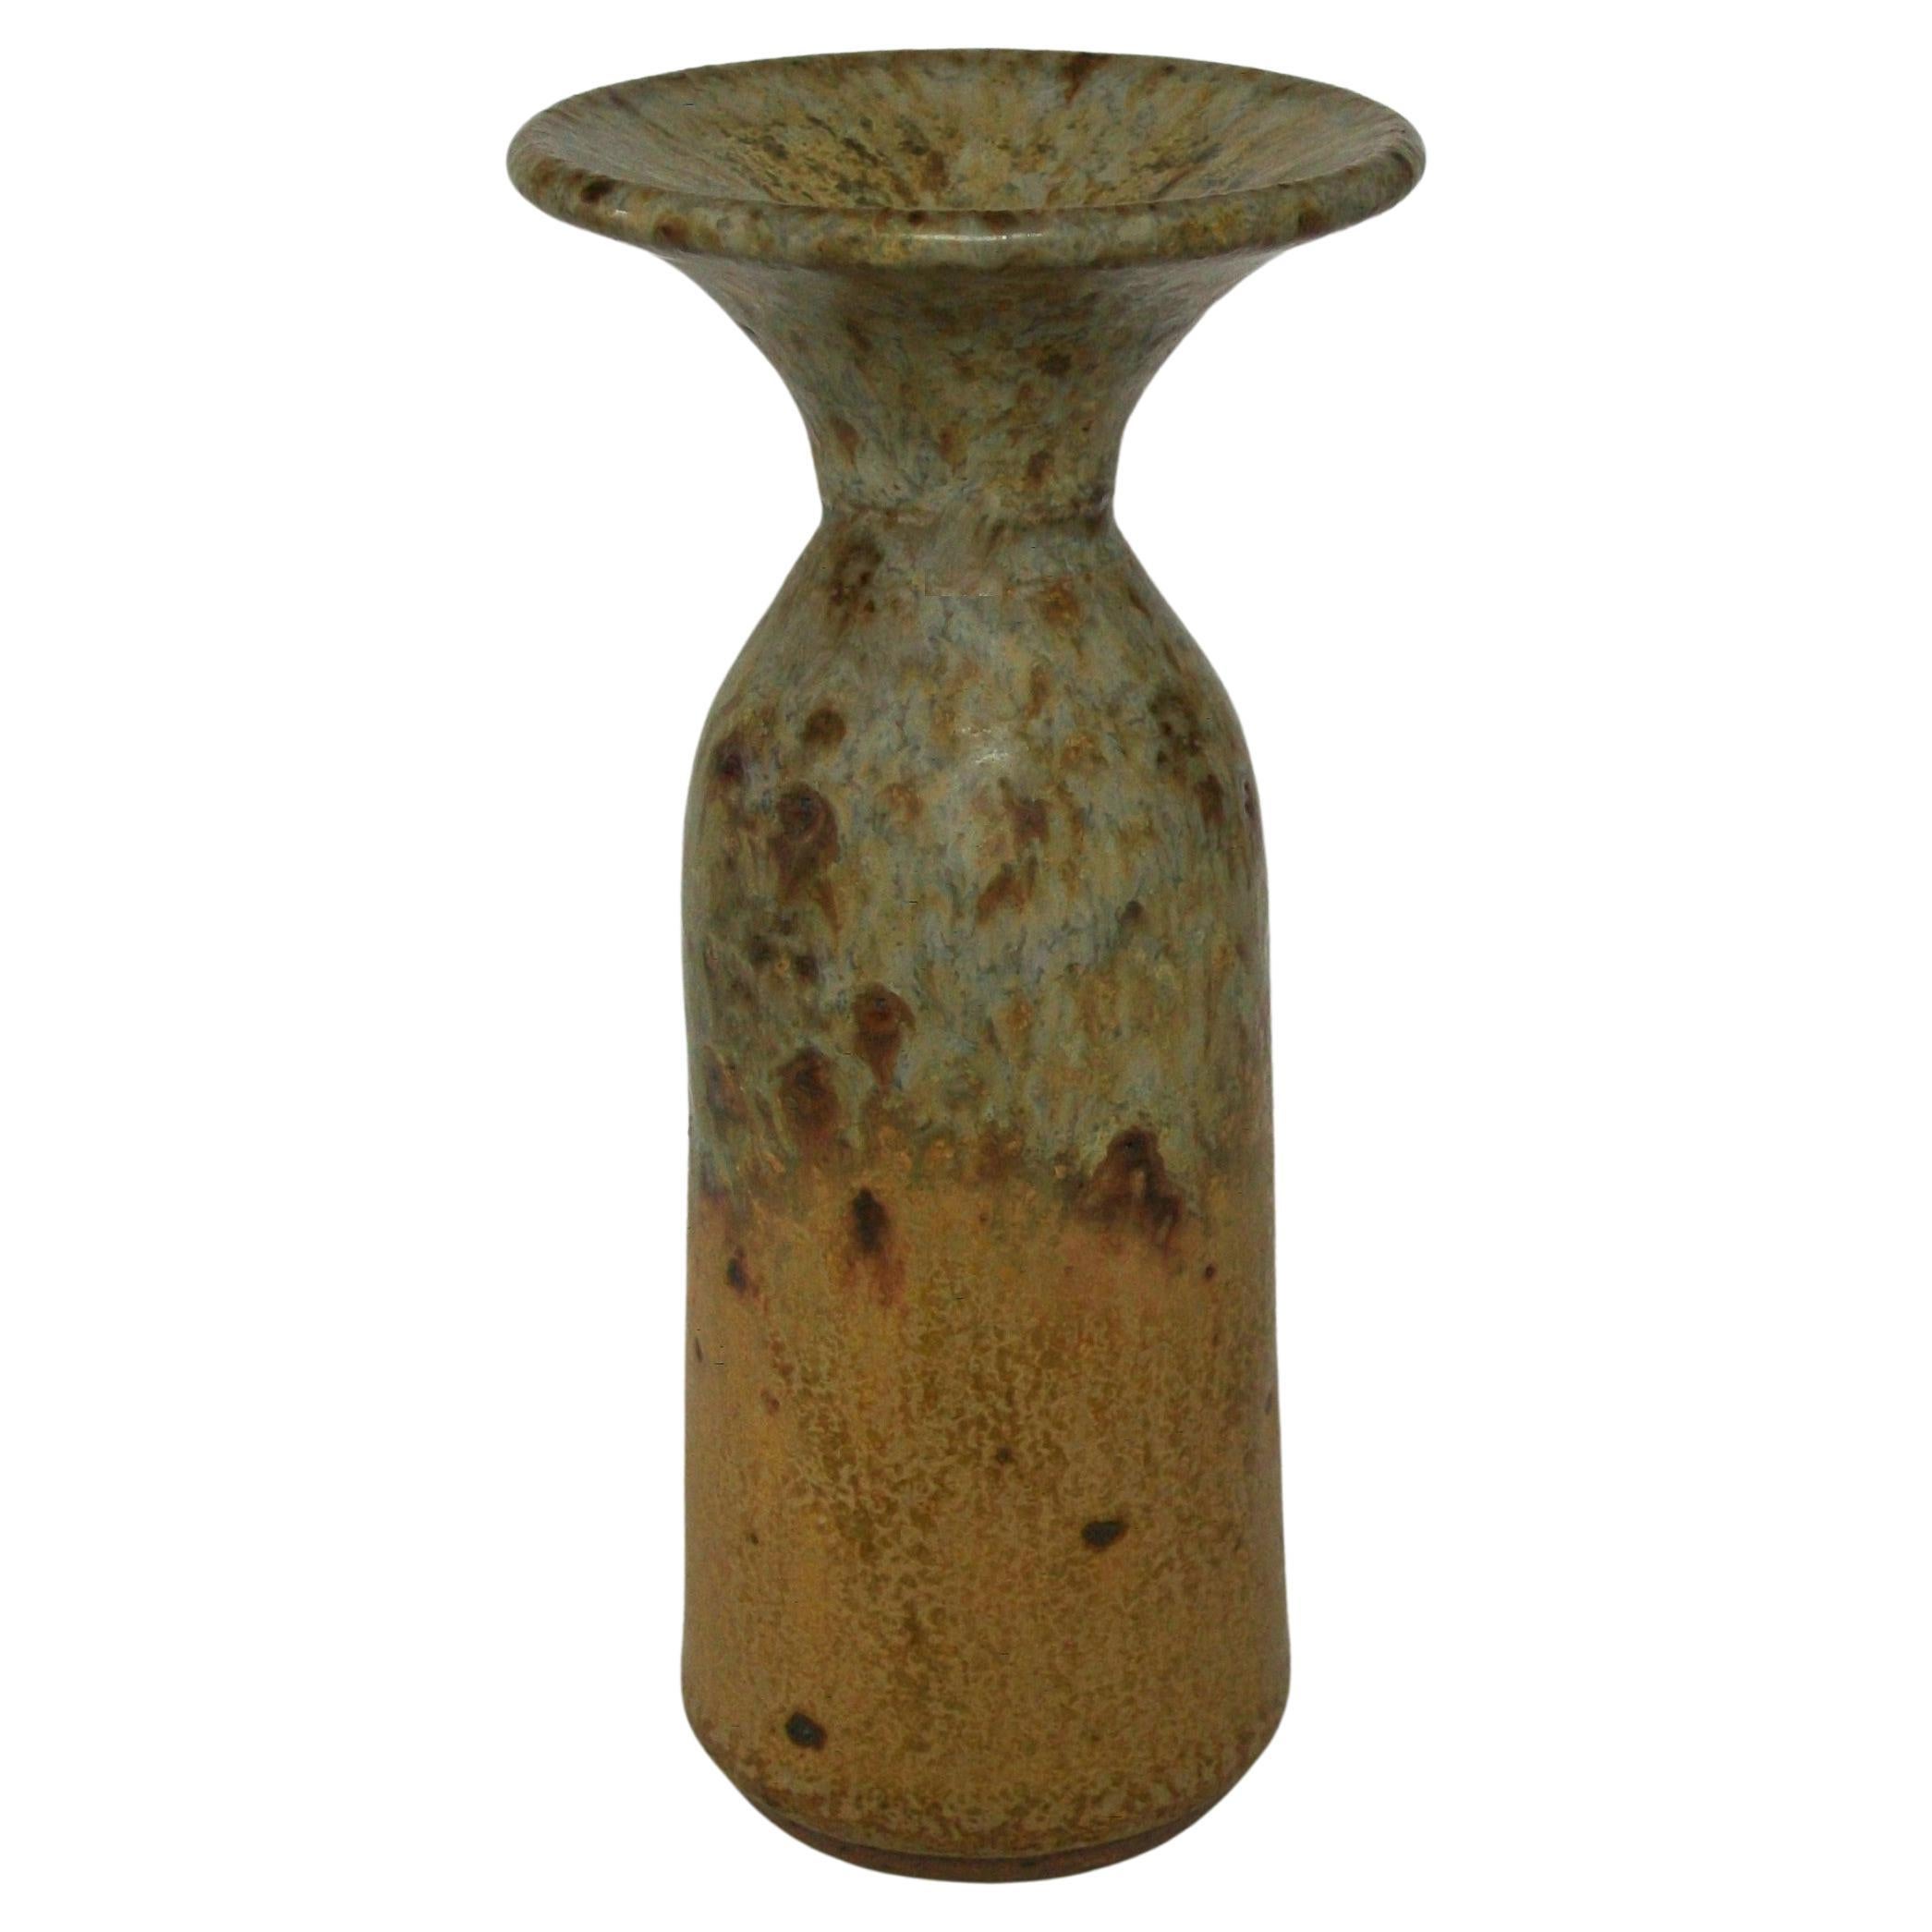 WAYNE TAYLOR - Vase en poterie d'atelier à bourgeons évasés - Canada - vers les années 1970